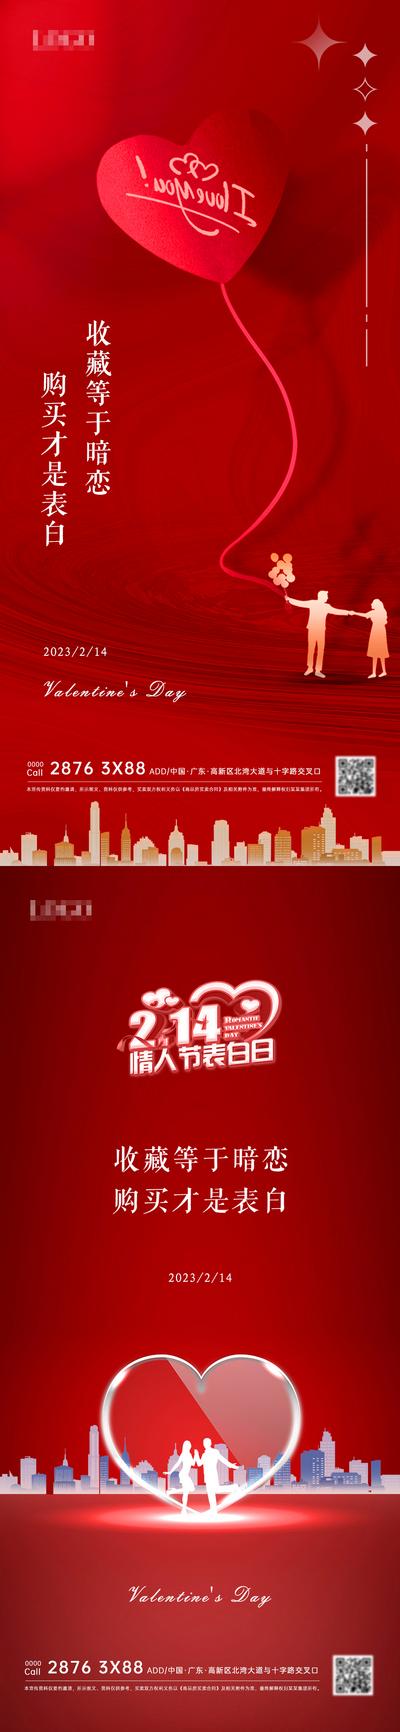 南门网 海报 地产 公历节日 情人节 红金 爱心 情侣 系列